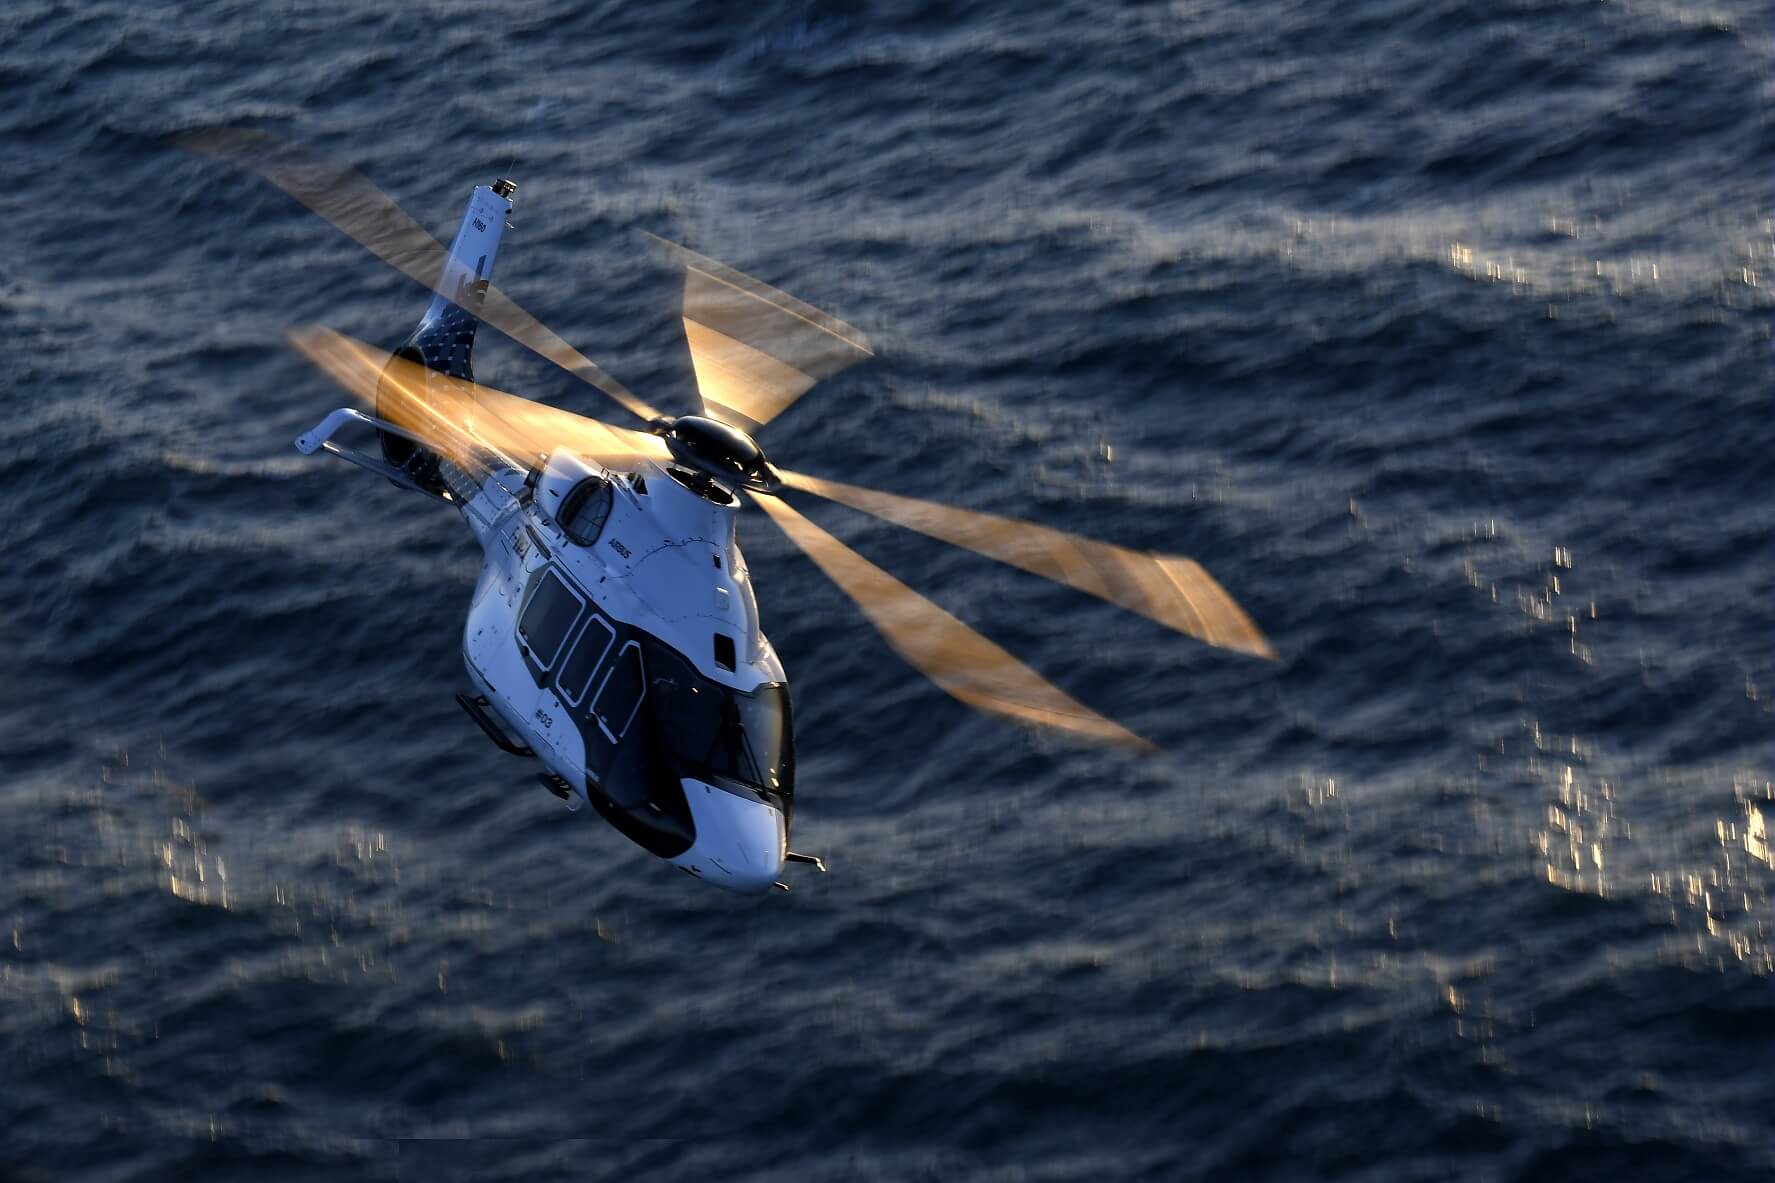 Le nouveau système optronique Euroflir 410 de Safran équipera des hélicoptères H160 de la Marine nationale